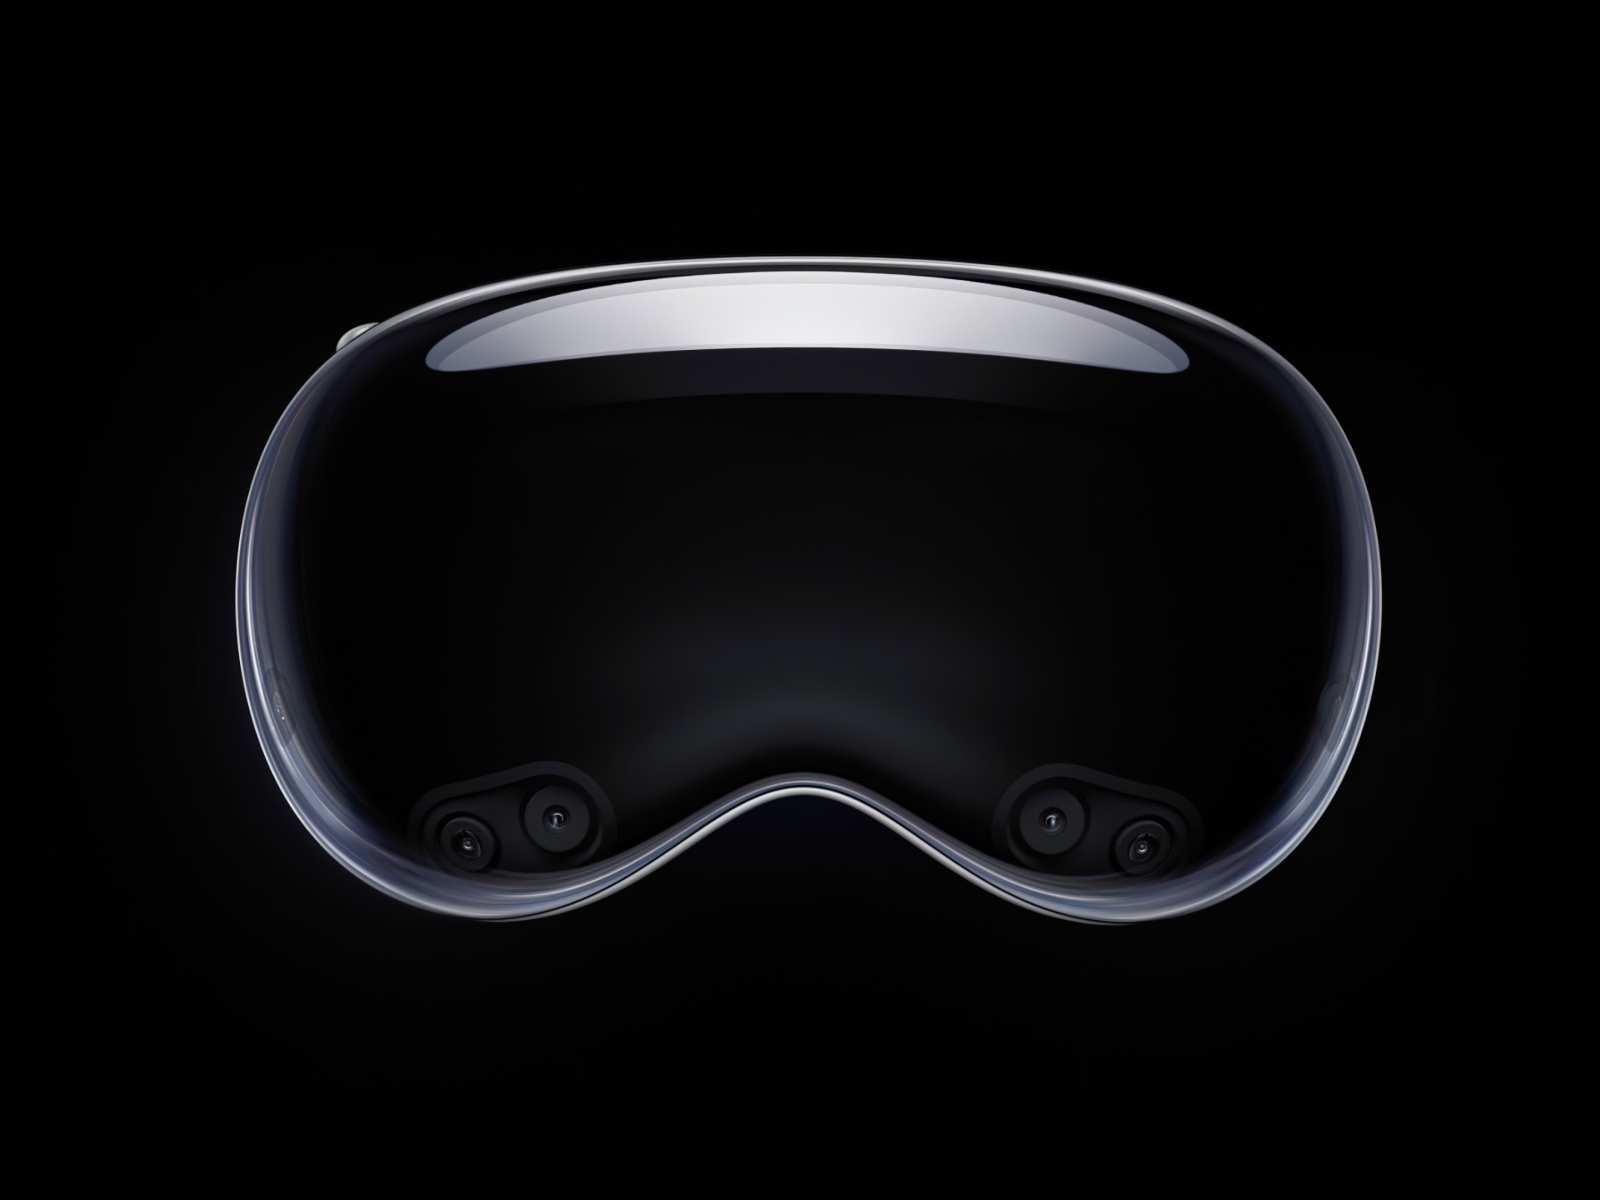 Очки виртуальной реальности  Apple Vision Pro на черном фоне